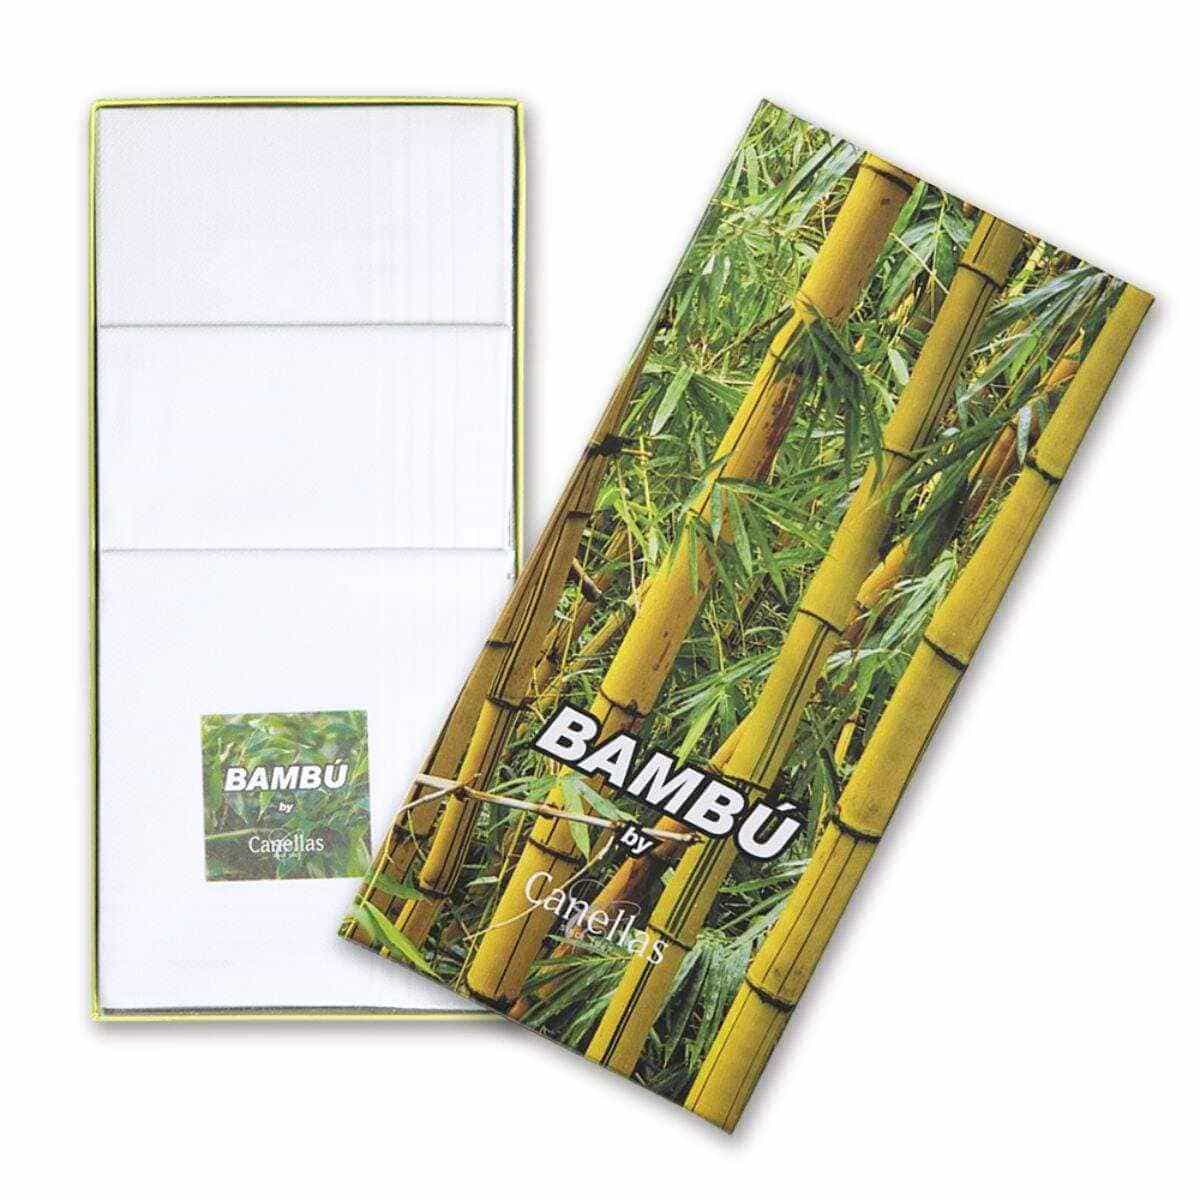 Pañuelos de bambú pack de 3